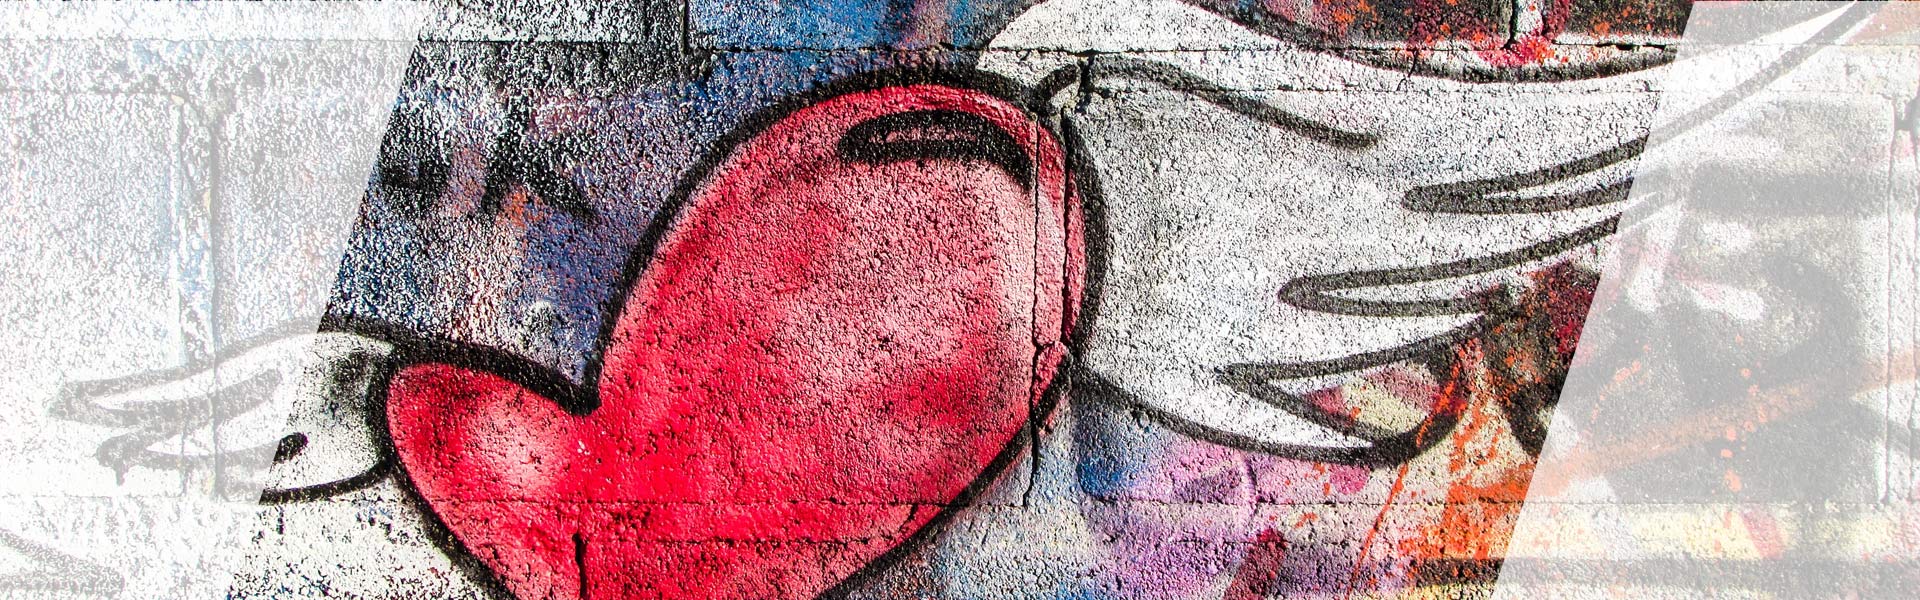 Graffiti - Herz an einer Wand